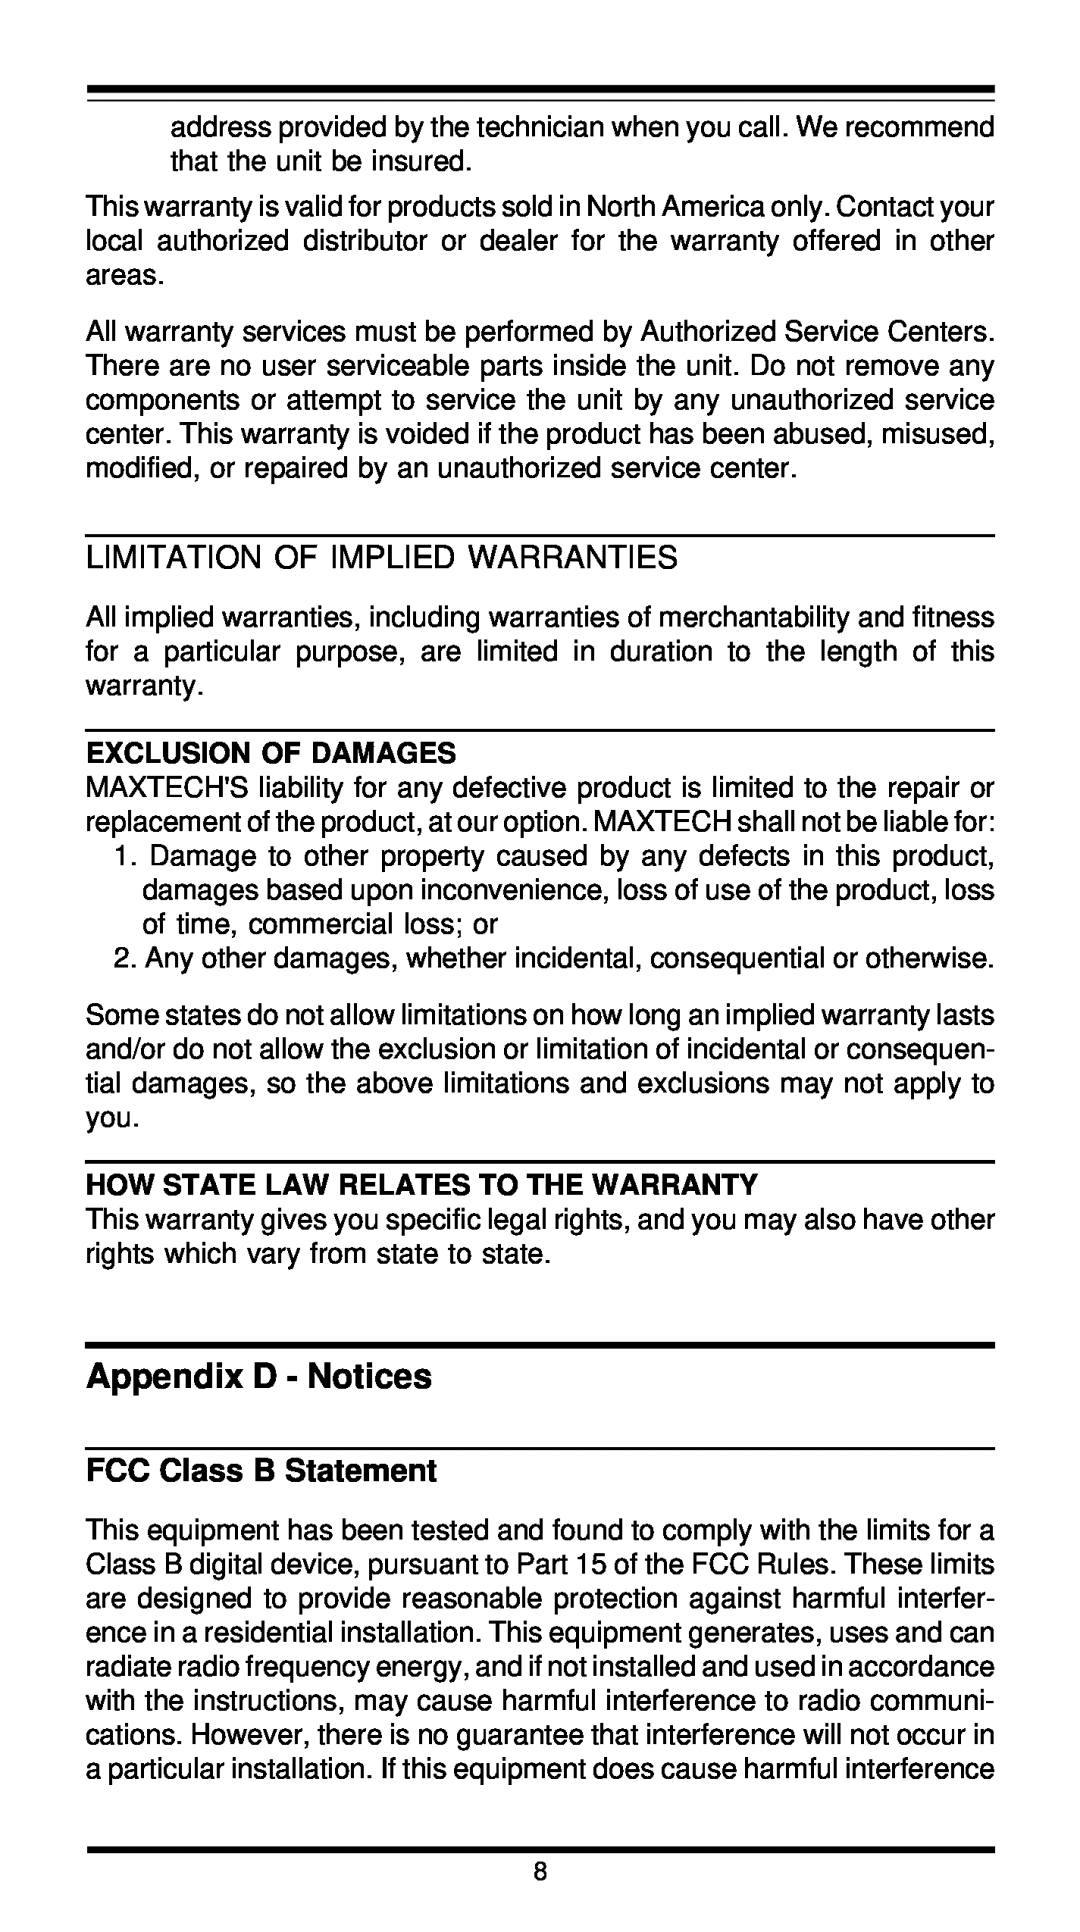 MaxTech XT5861 Appendix D - Notices, Limitation Of Implied Warranties, FCC Class B Statement, Exclusion Of Damages 